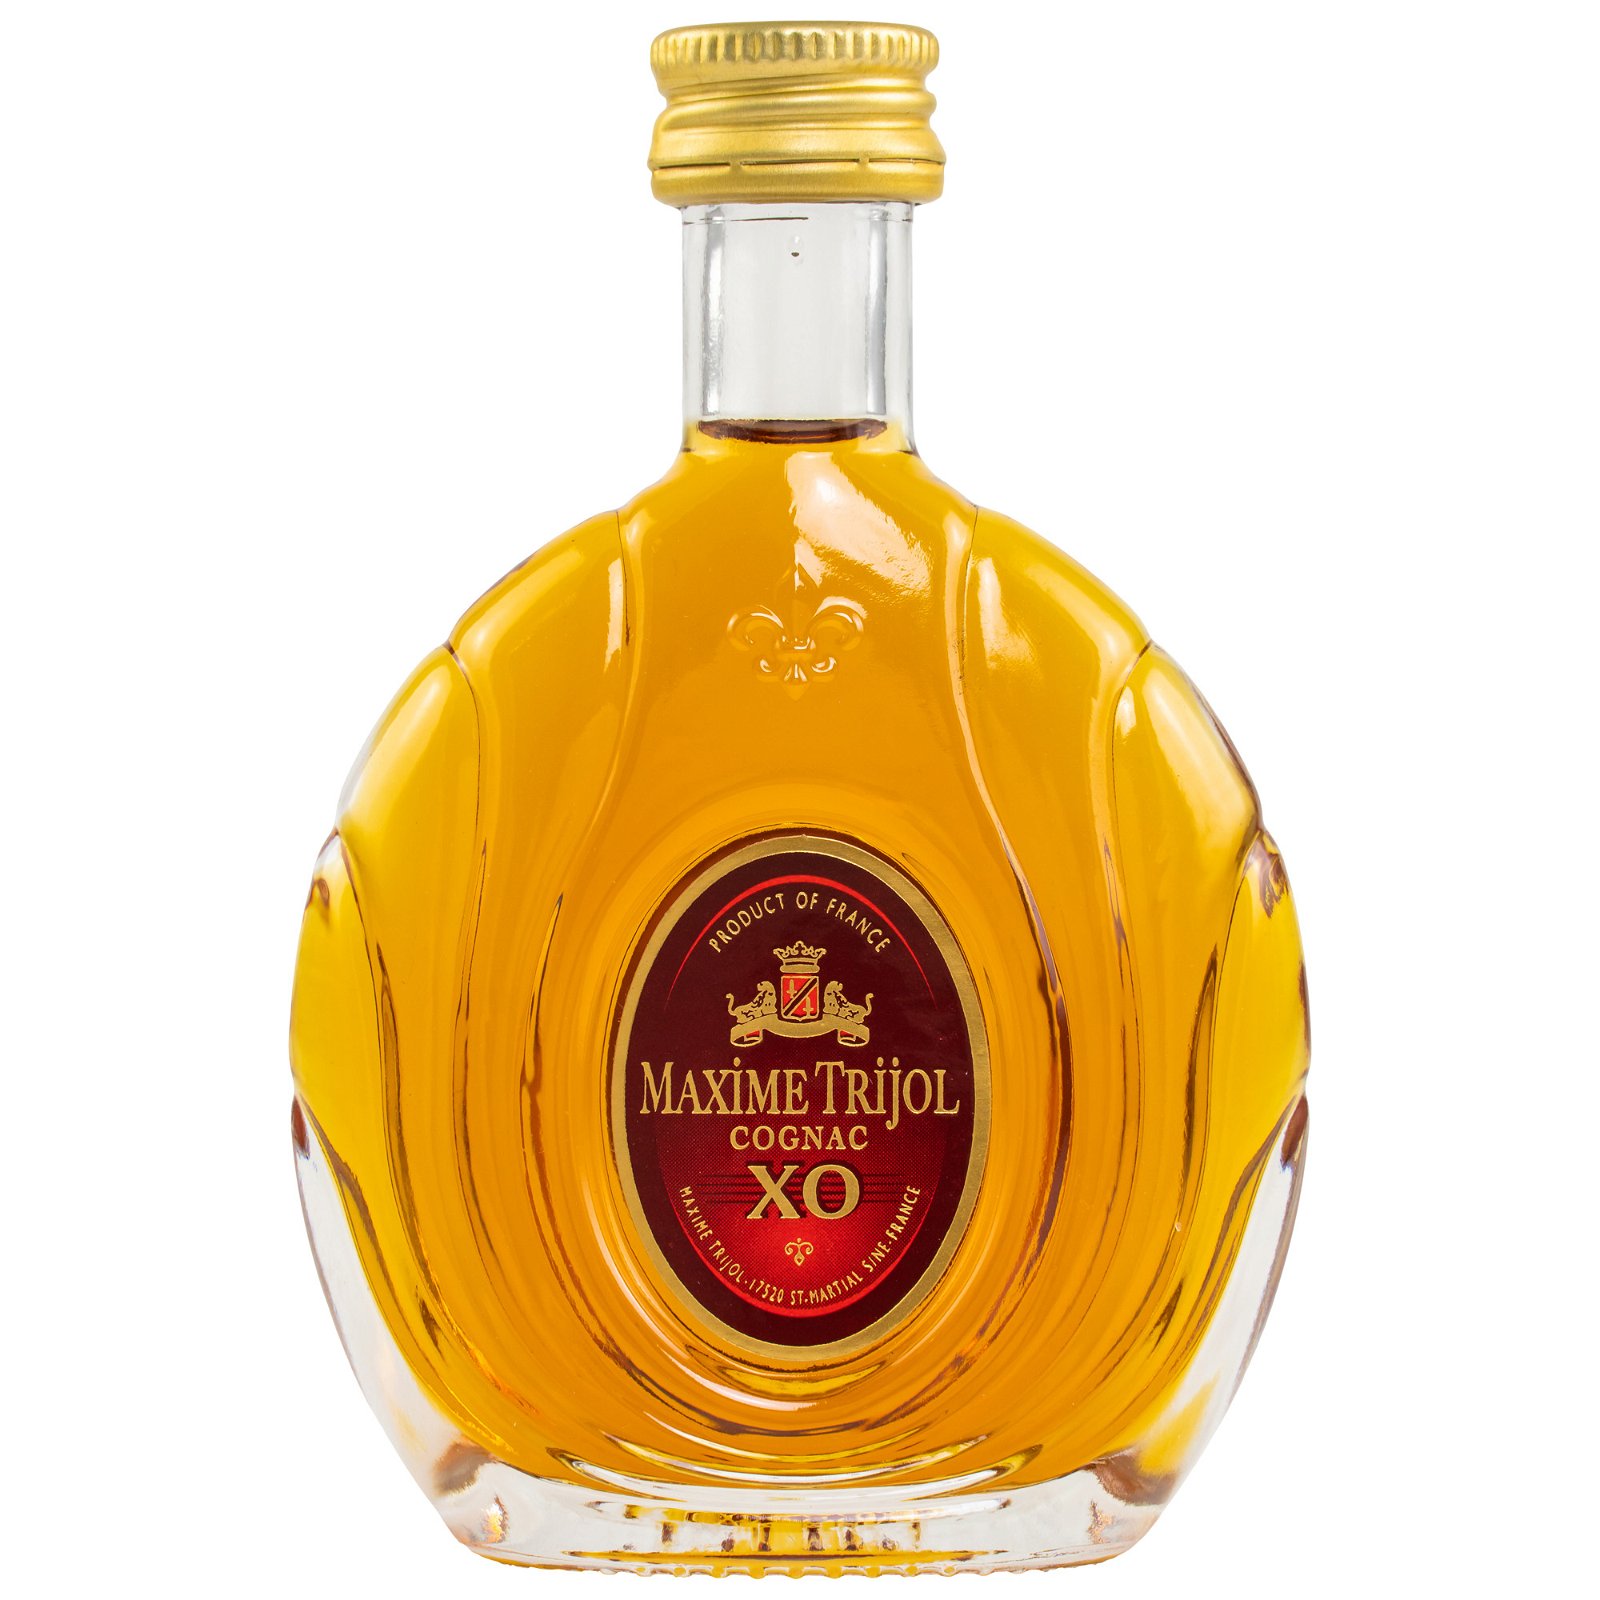 Maxime Trijol XO Cognac (50ml)